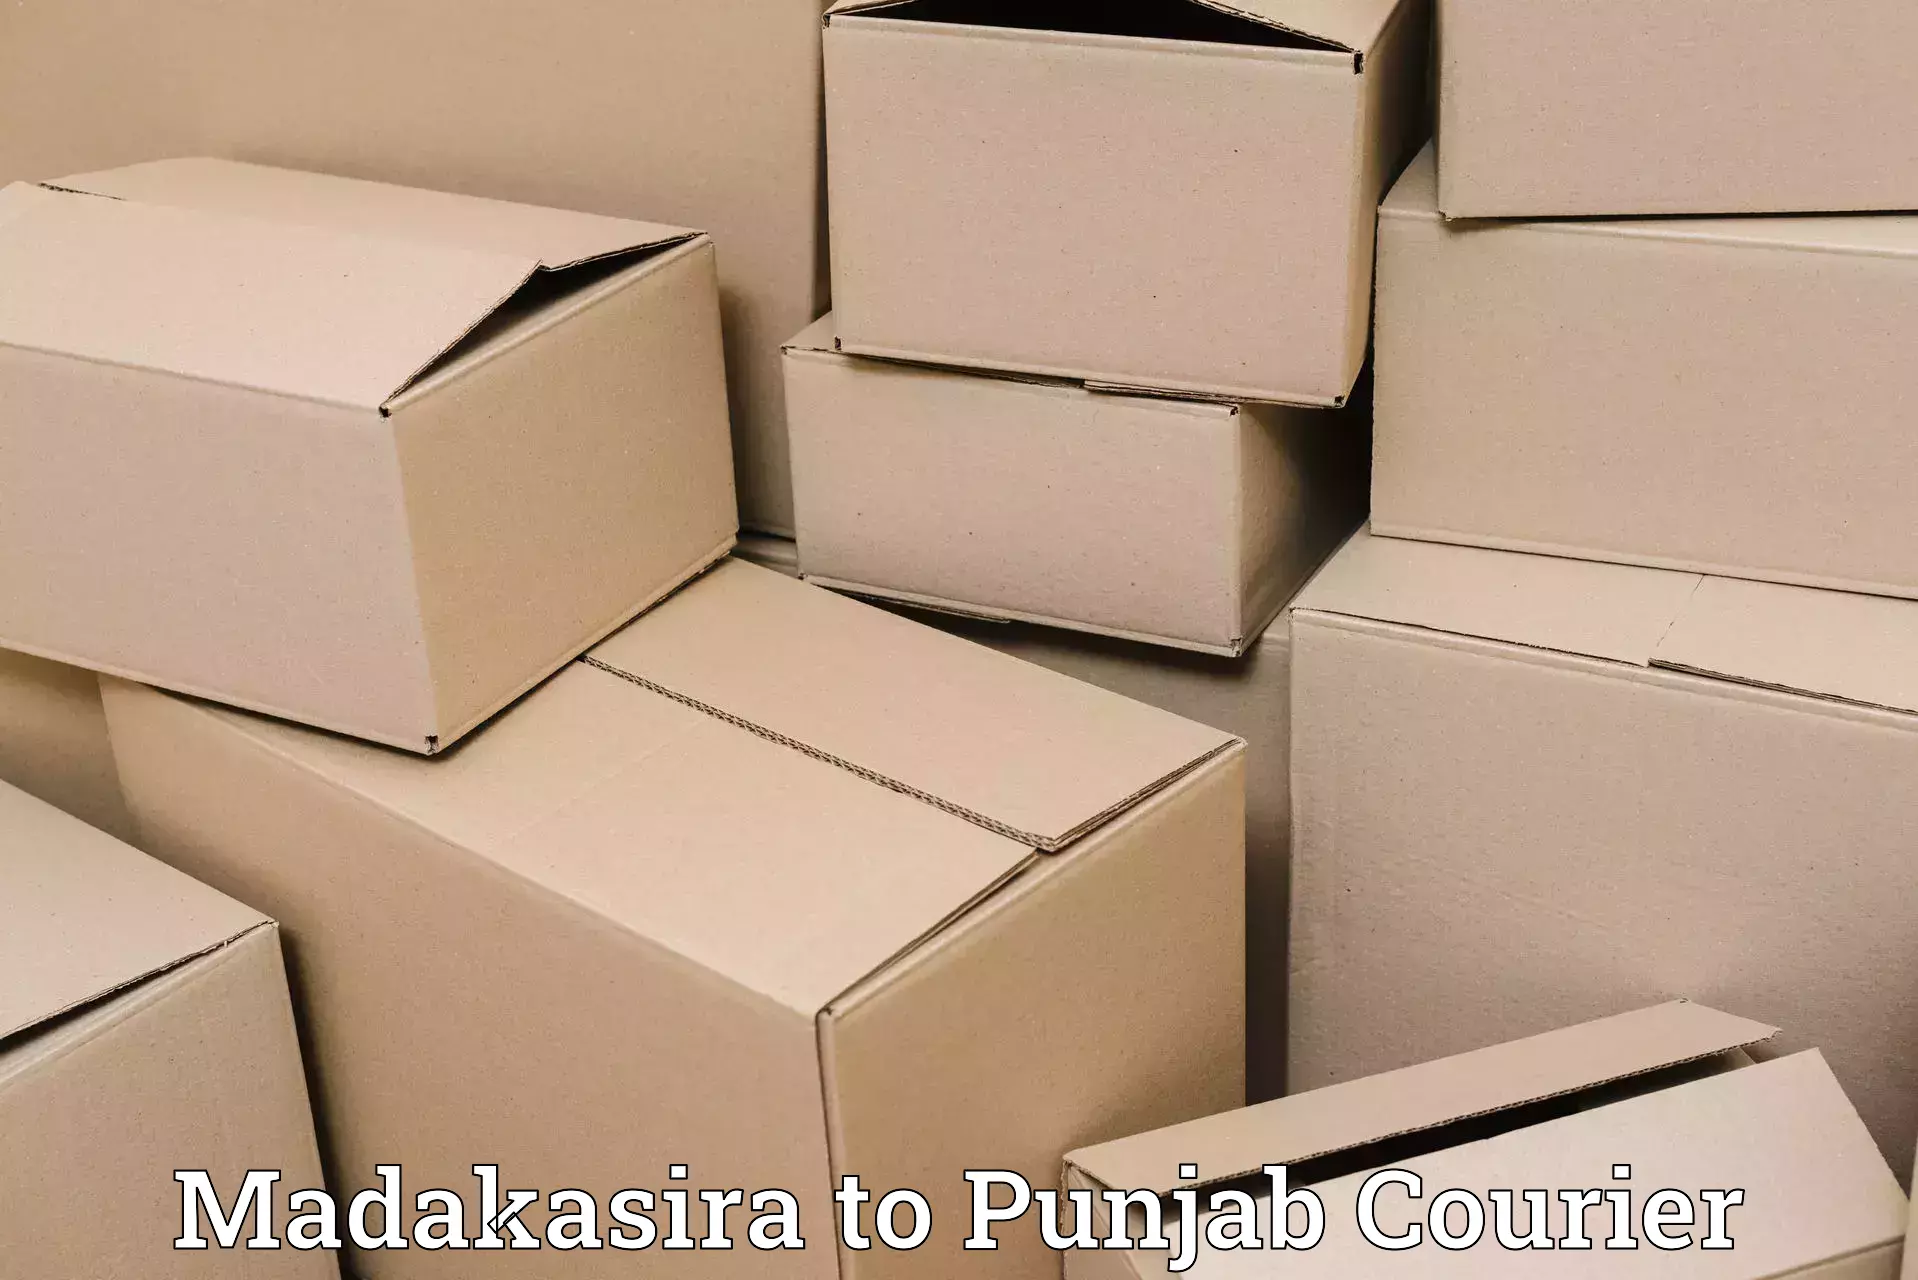 Efficient courier operations Madakasira to Central University of Punjab Bathinda